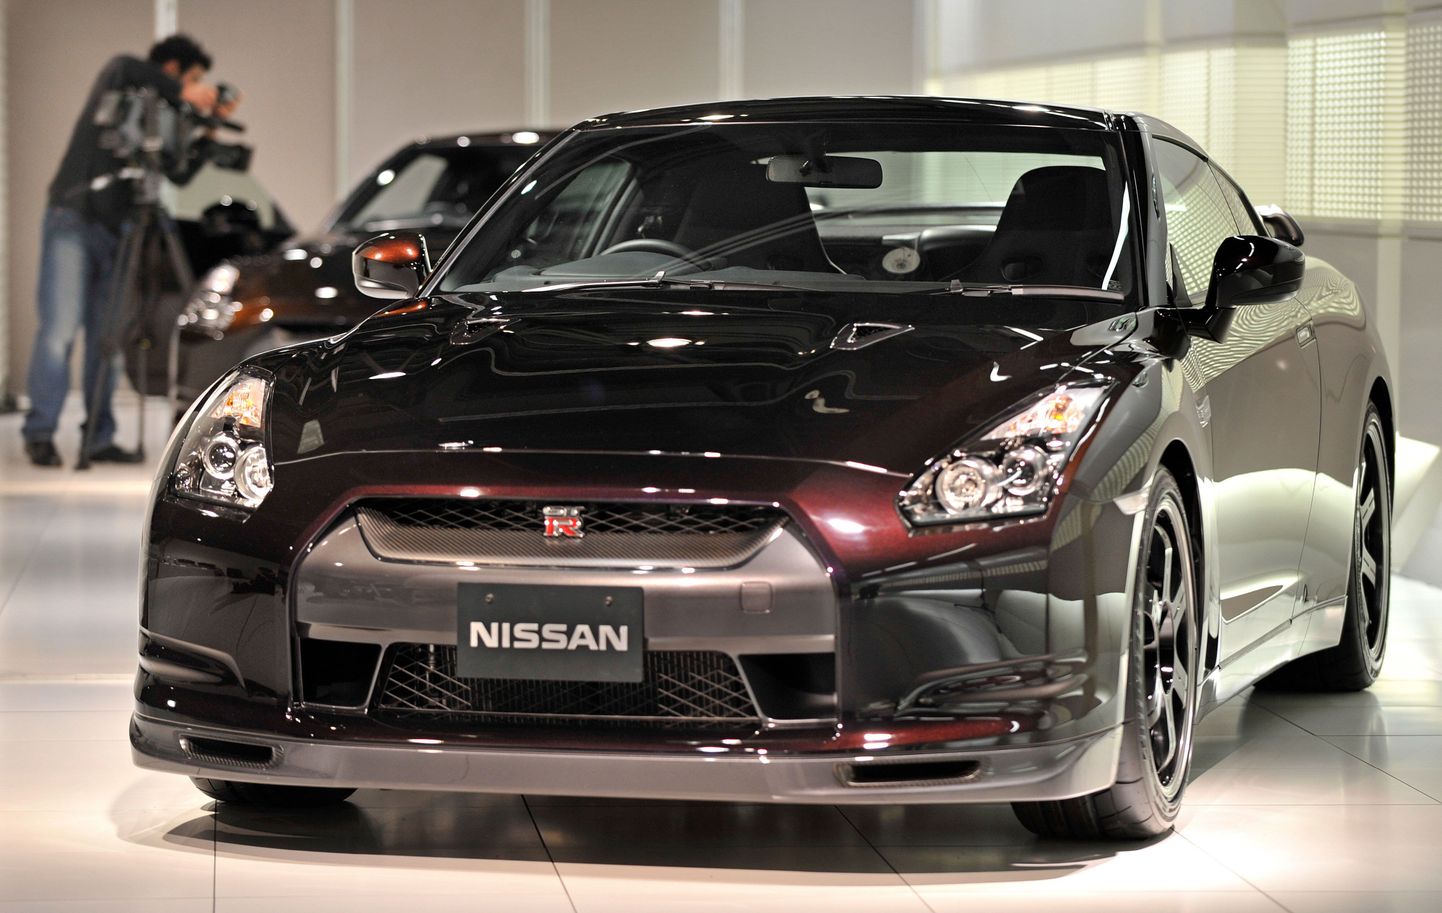 Праворульный автомобиль Nissan GT-R. Иллюстративное фото.